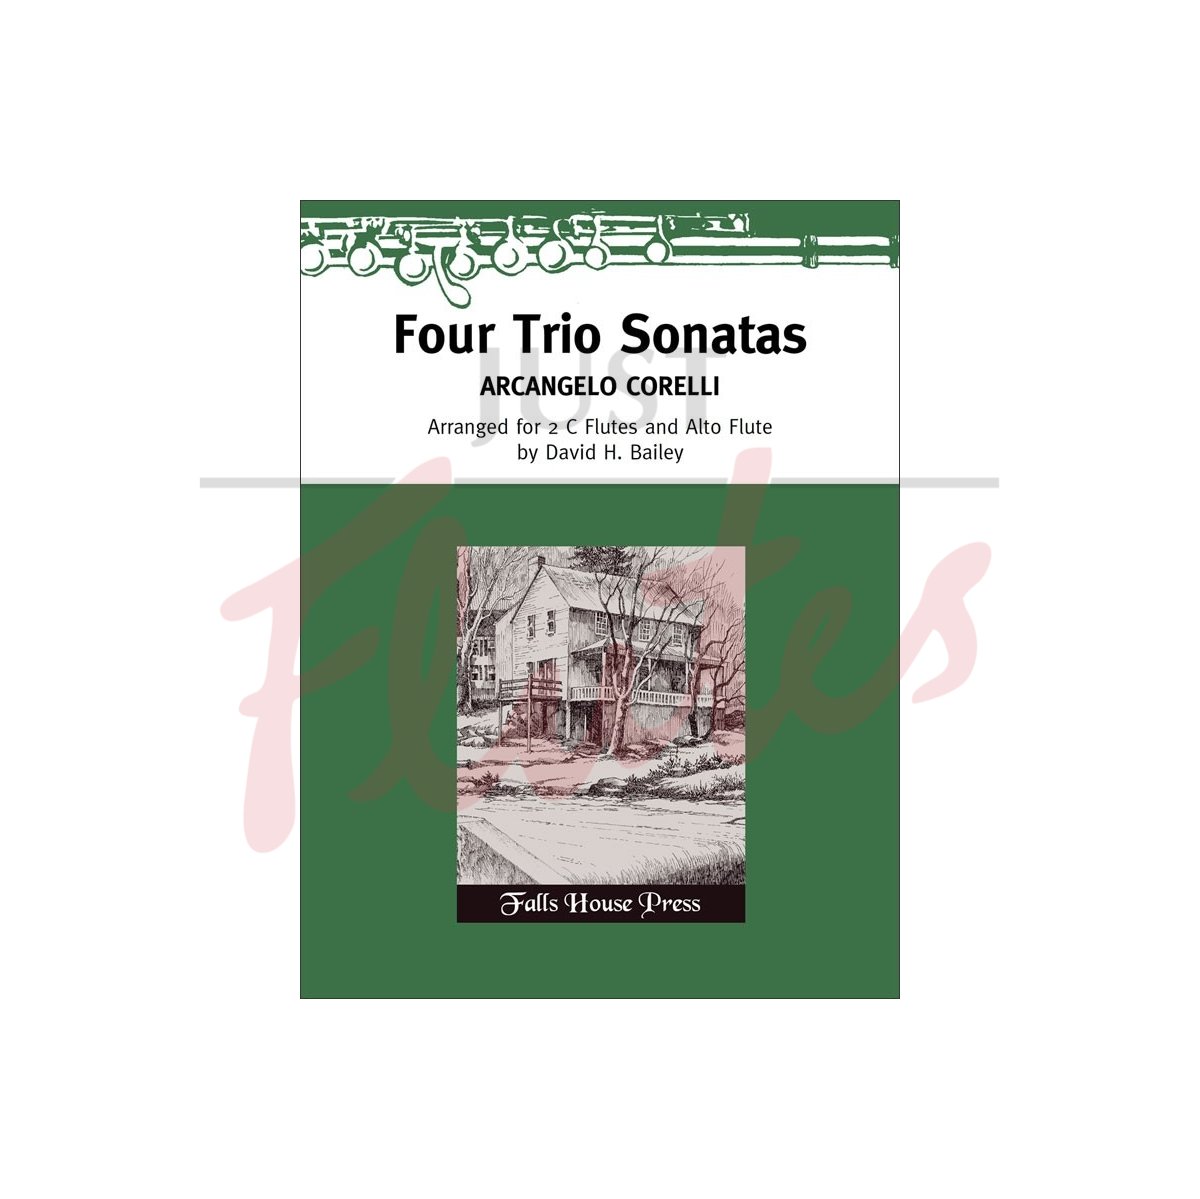 Four Trio Sonatas for Two Flutes and Alto Flute